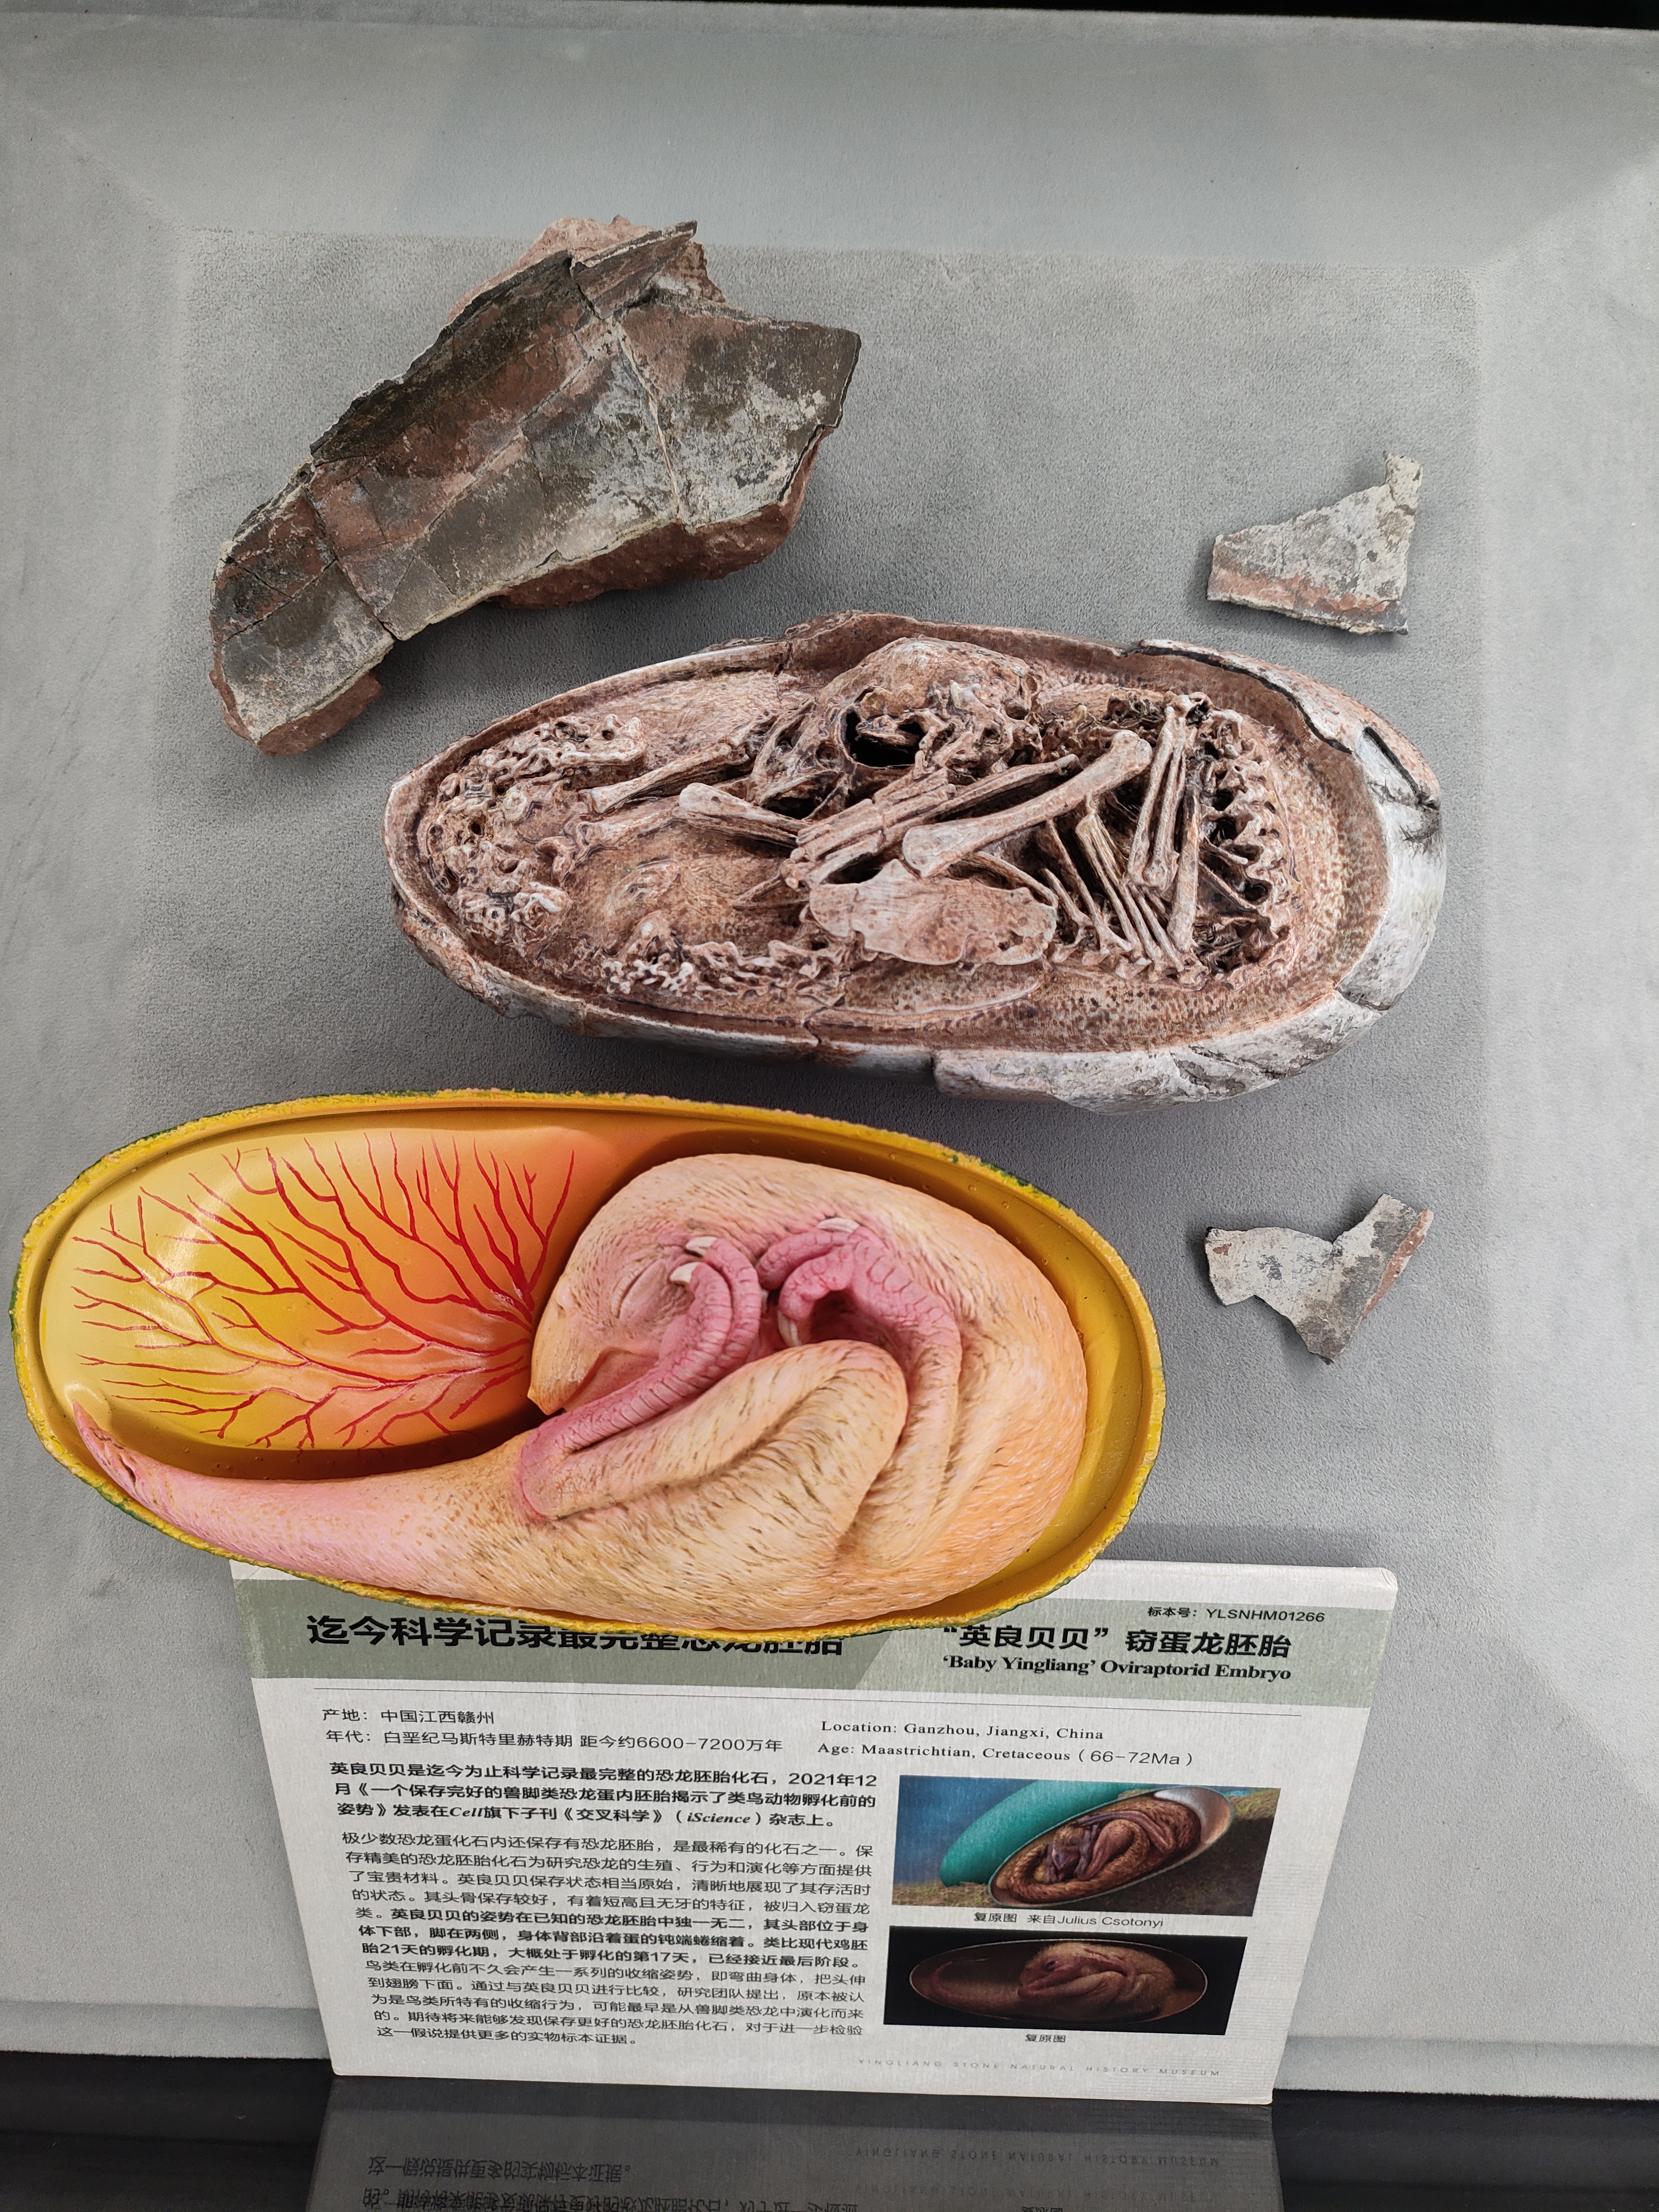 图片4“镇馆之宝”——世界上最完整的恐龙胚胎“英良贝贝”.jpg